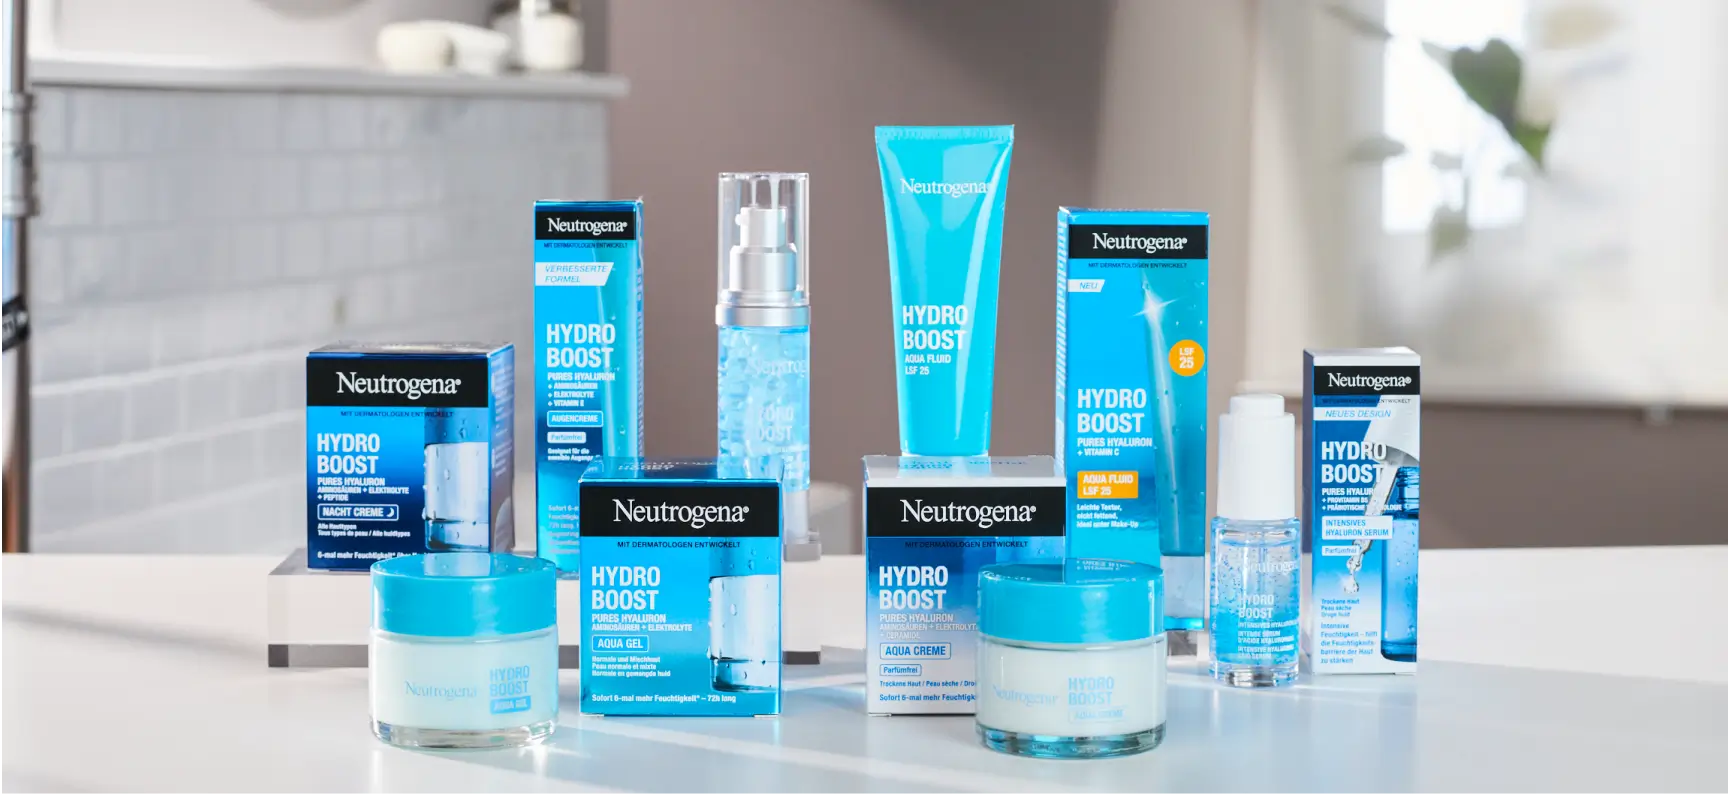 Neutrogena Hydro Boost - Feuchtigkeitspflege fürs Gesicht